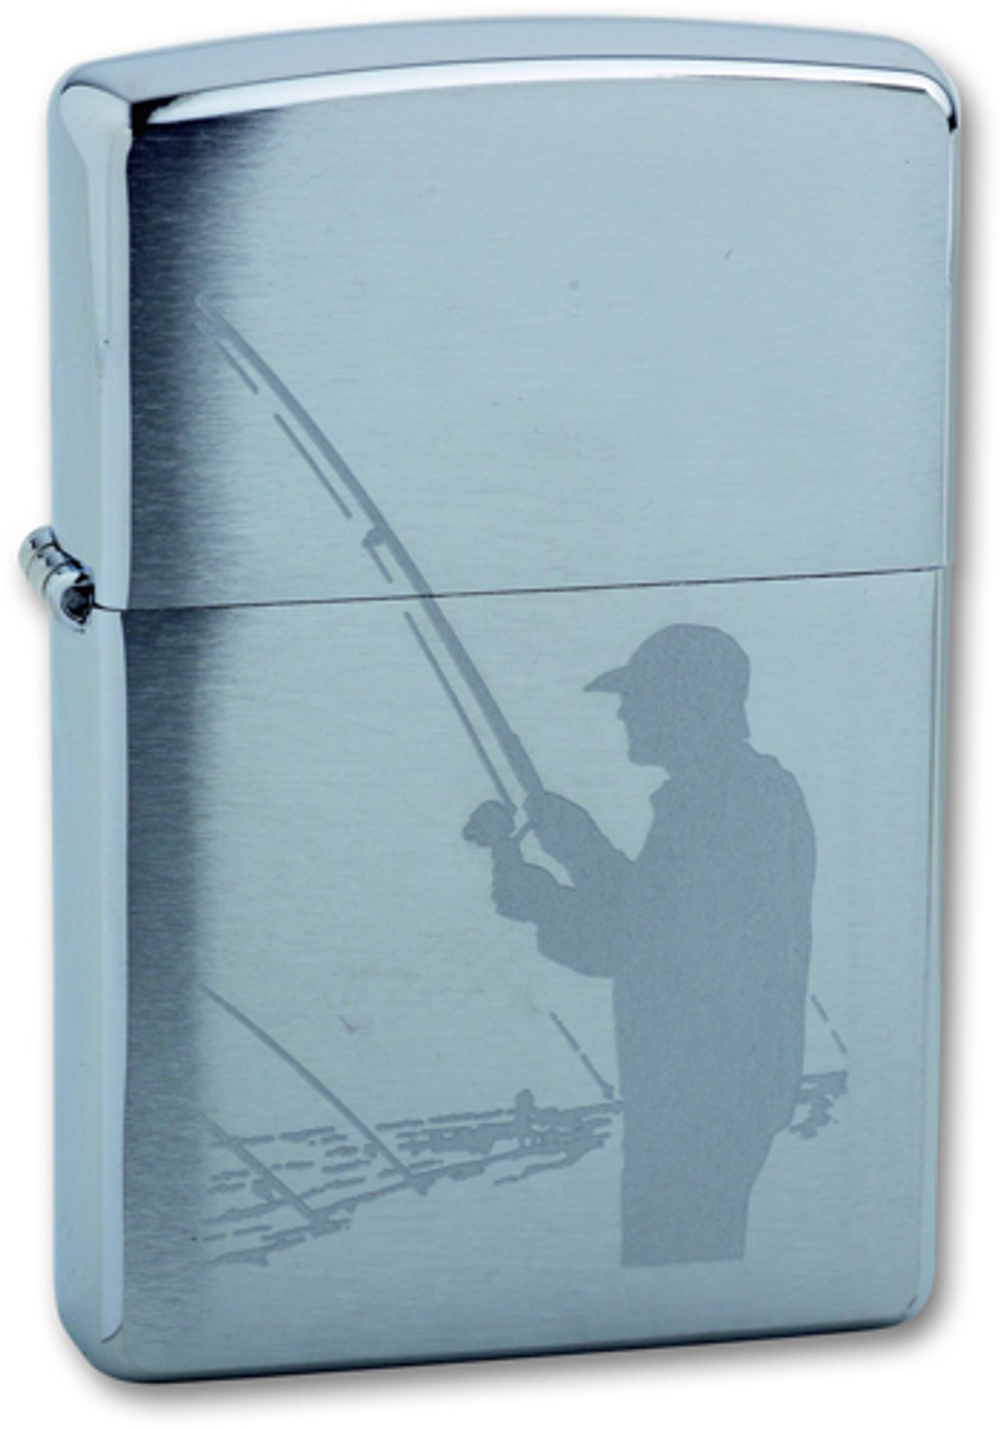 Легендарная классическая американская бензиновая широкая зажигалка ZIPPO Classic Brushed Chrome™ серебристая матовая из латуни и стали с изображение рыбака с добычей ZP-200 Fisherman